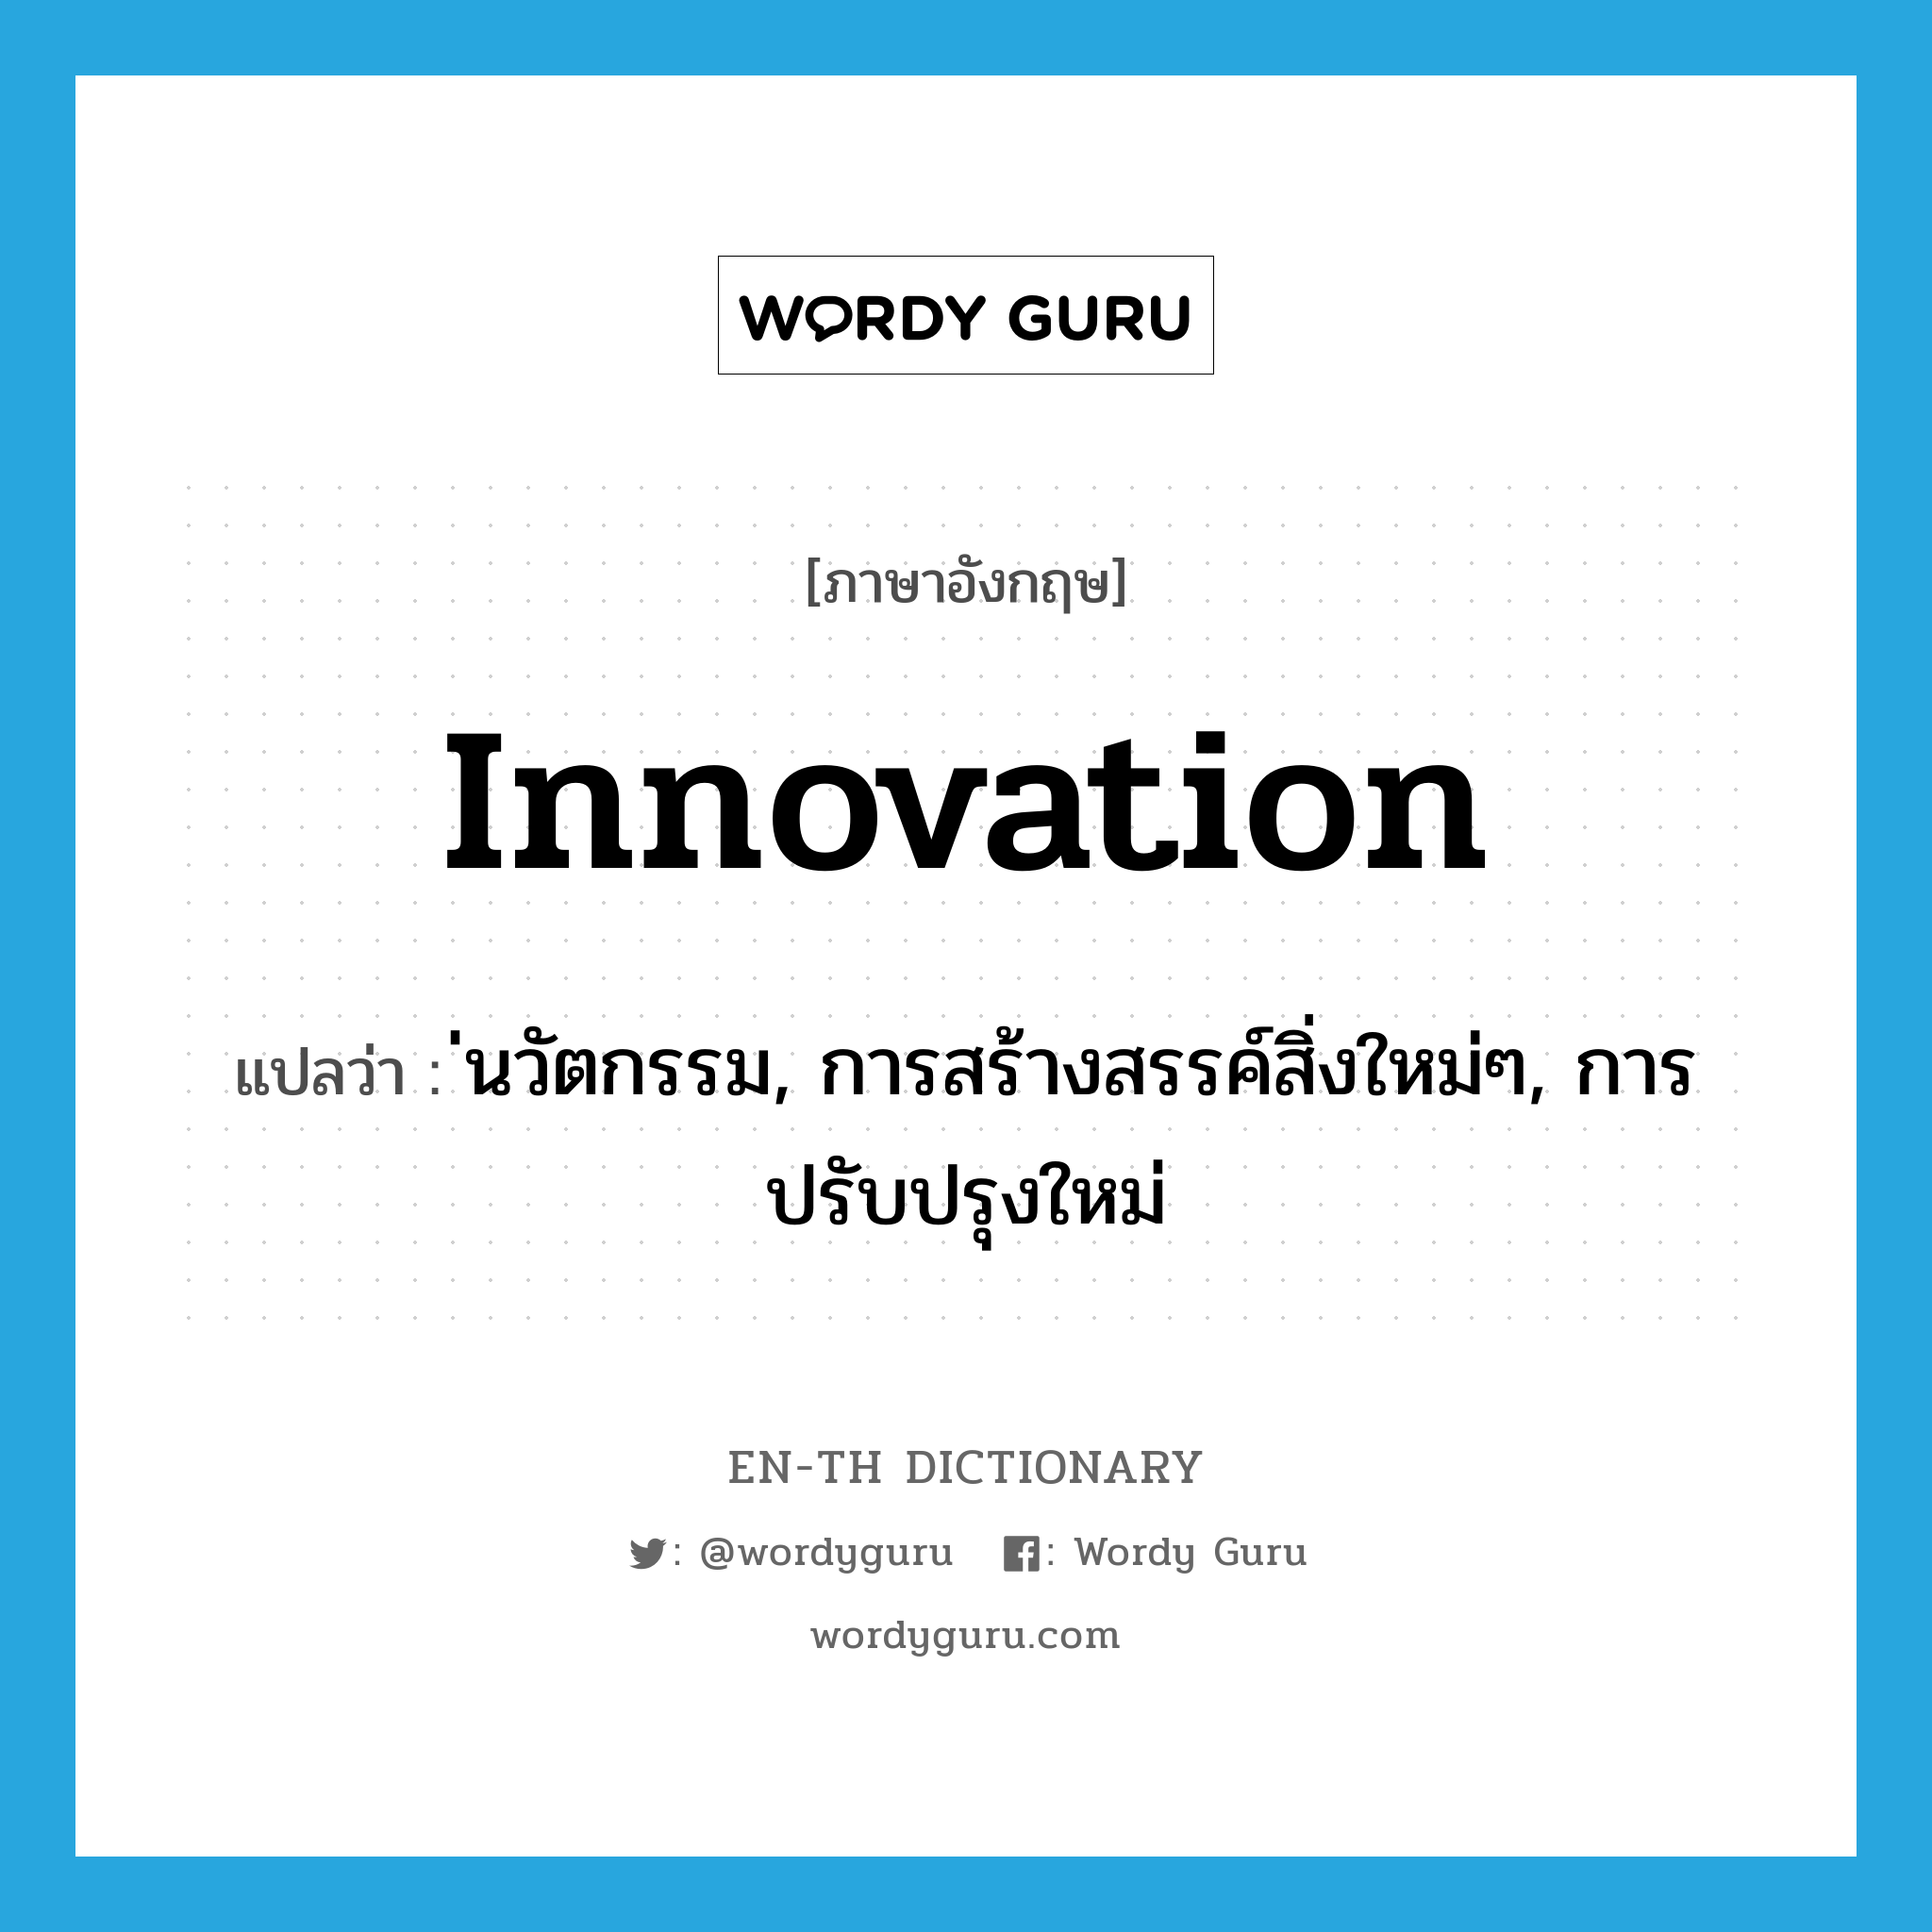 innovation แปลว่า?, คำศัพท์ภาษาอังกฤษ innovation แปลว่า ่นวัตกรรม, การสร้างสรรค์สิ่งใหม่ๆ, การปรับปรุงใหม่ ประเภท N หมวด N